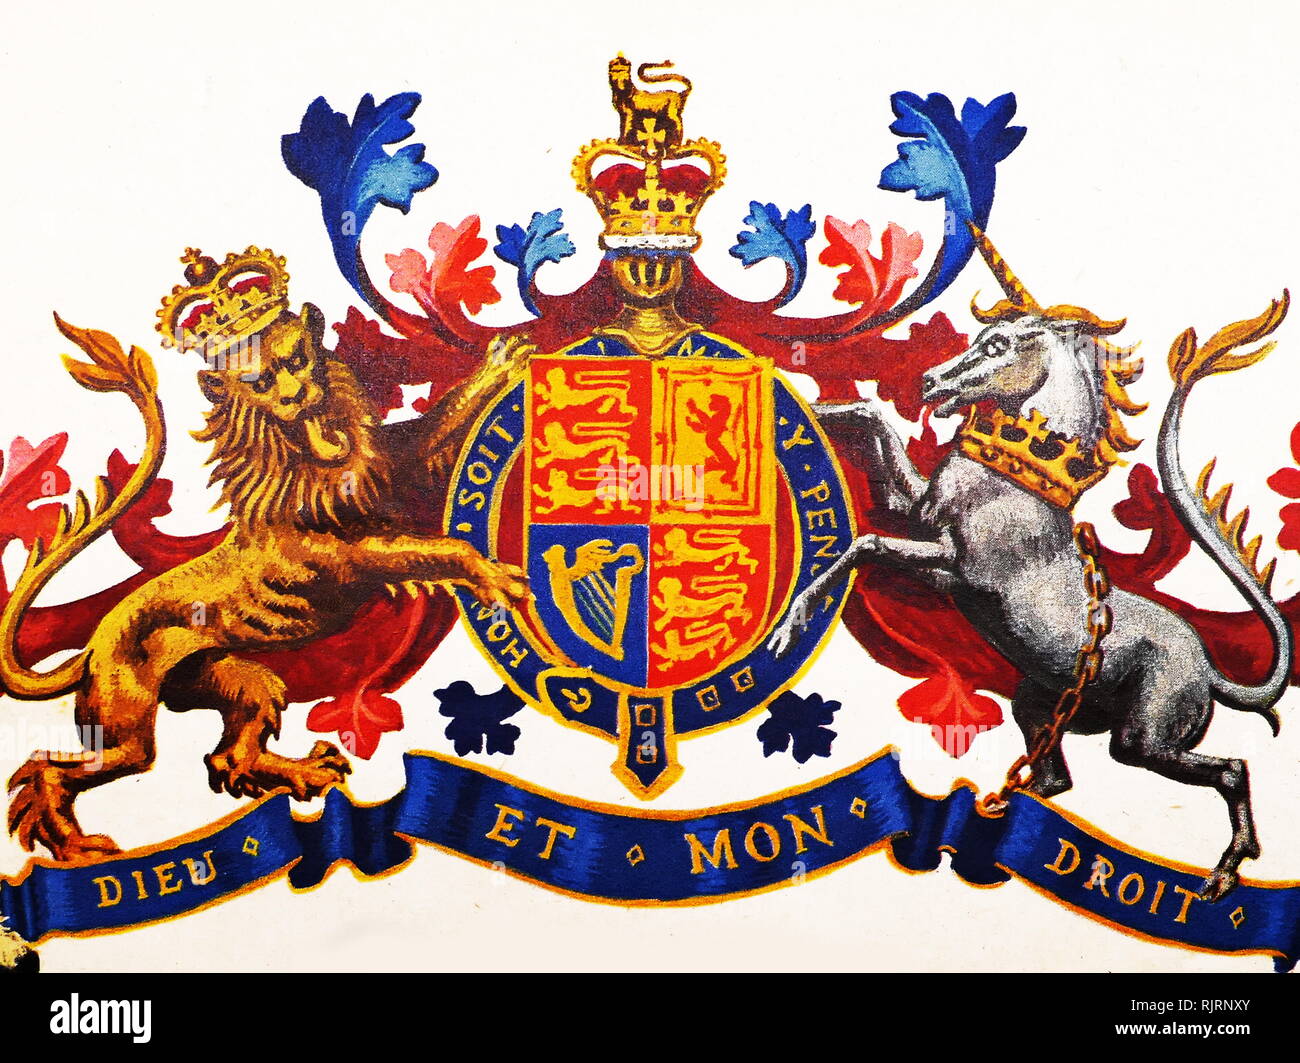 Abschirmung des 'Englisch' (nicht-Schottischen) Version des königlichen Wappen des Vereinigten Königreichs. Dieu et mon Droit (Gott und mein Recht) ist das Motto der Monarch des Vereinigten Königreichs, außerhalb Schottlands. Das Motto ist die erste von Richard verwendet worden sind (1157-1199) Stockfoto